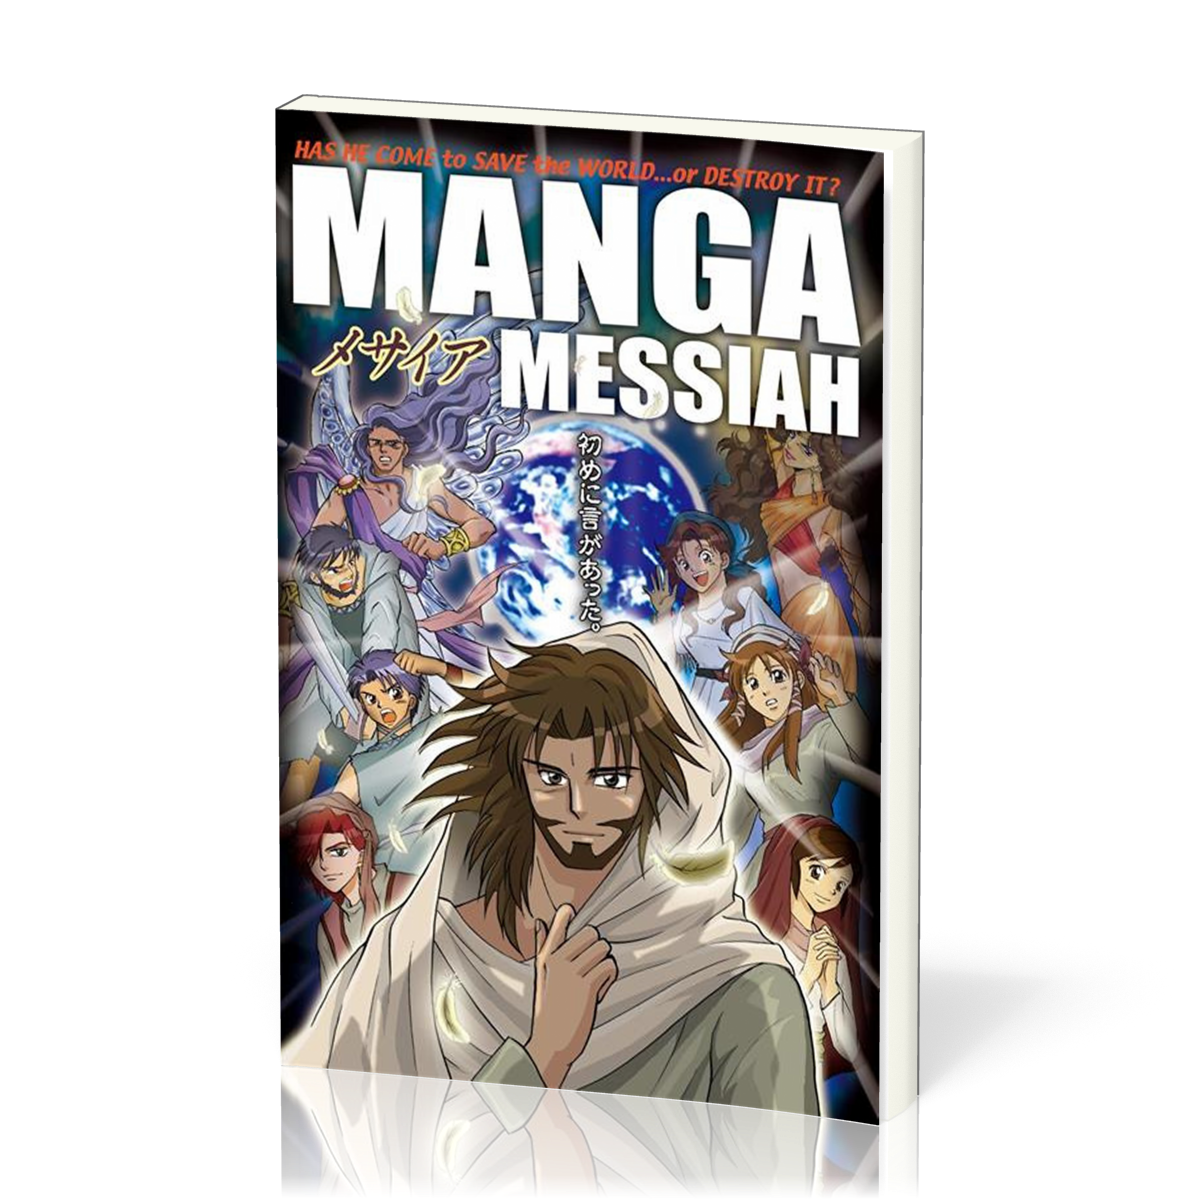 Manga. Messiah - Anglais, Manga. Le Messie